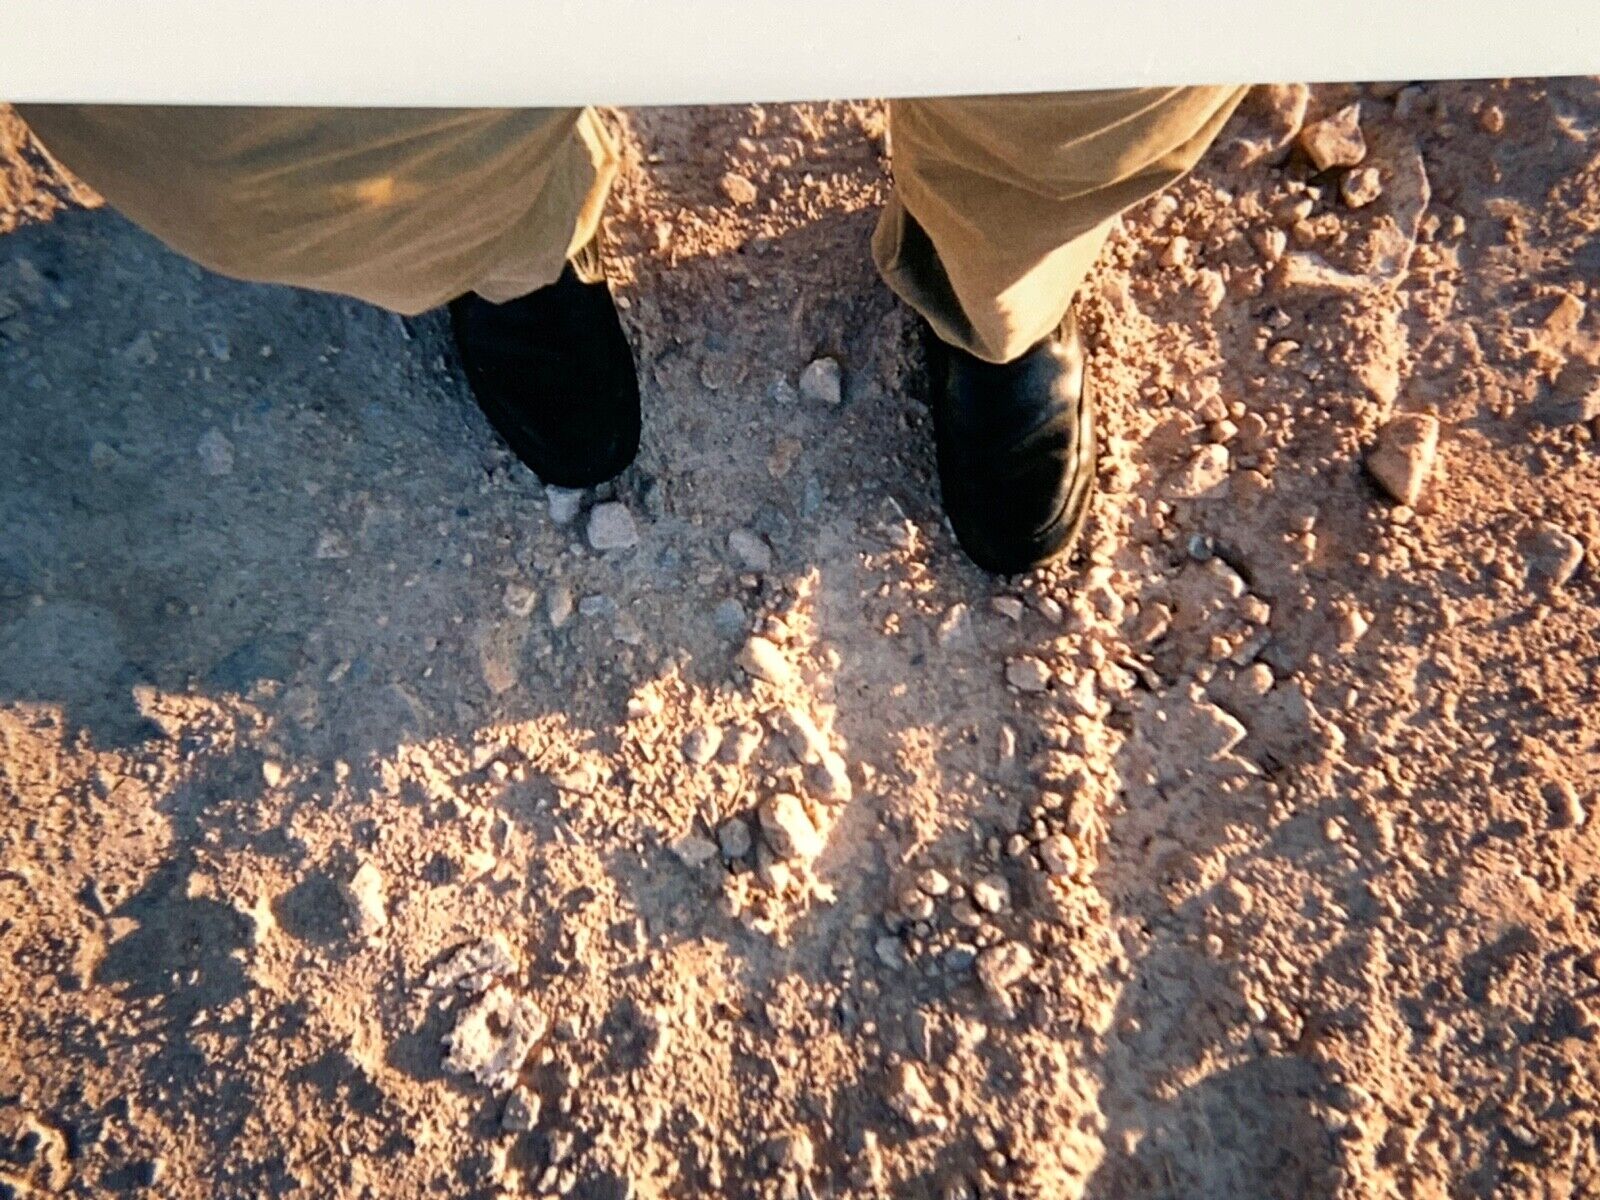 (Kc) FOUND PHOTO Photograph Snapshot 4x6 Feet Shoes Sand Dirt Desert Abstract 